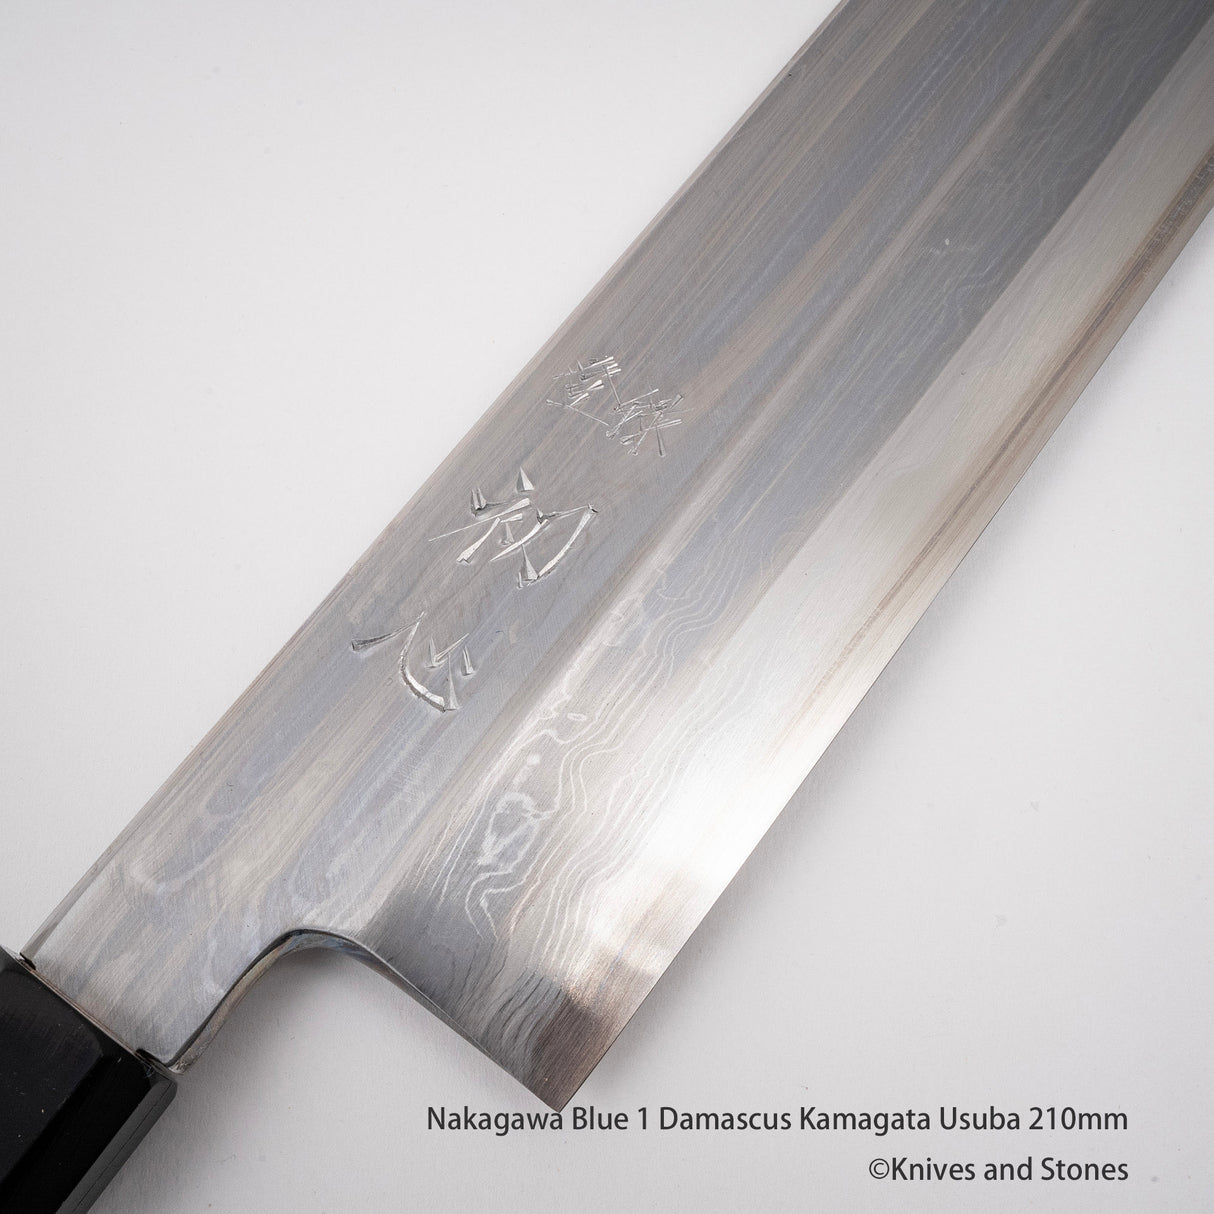 Nakagawa Blue 1 Damascus Kamagata Usuba 210mm